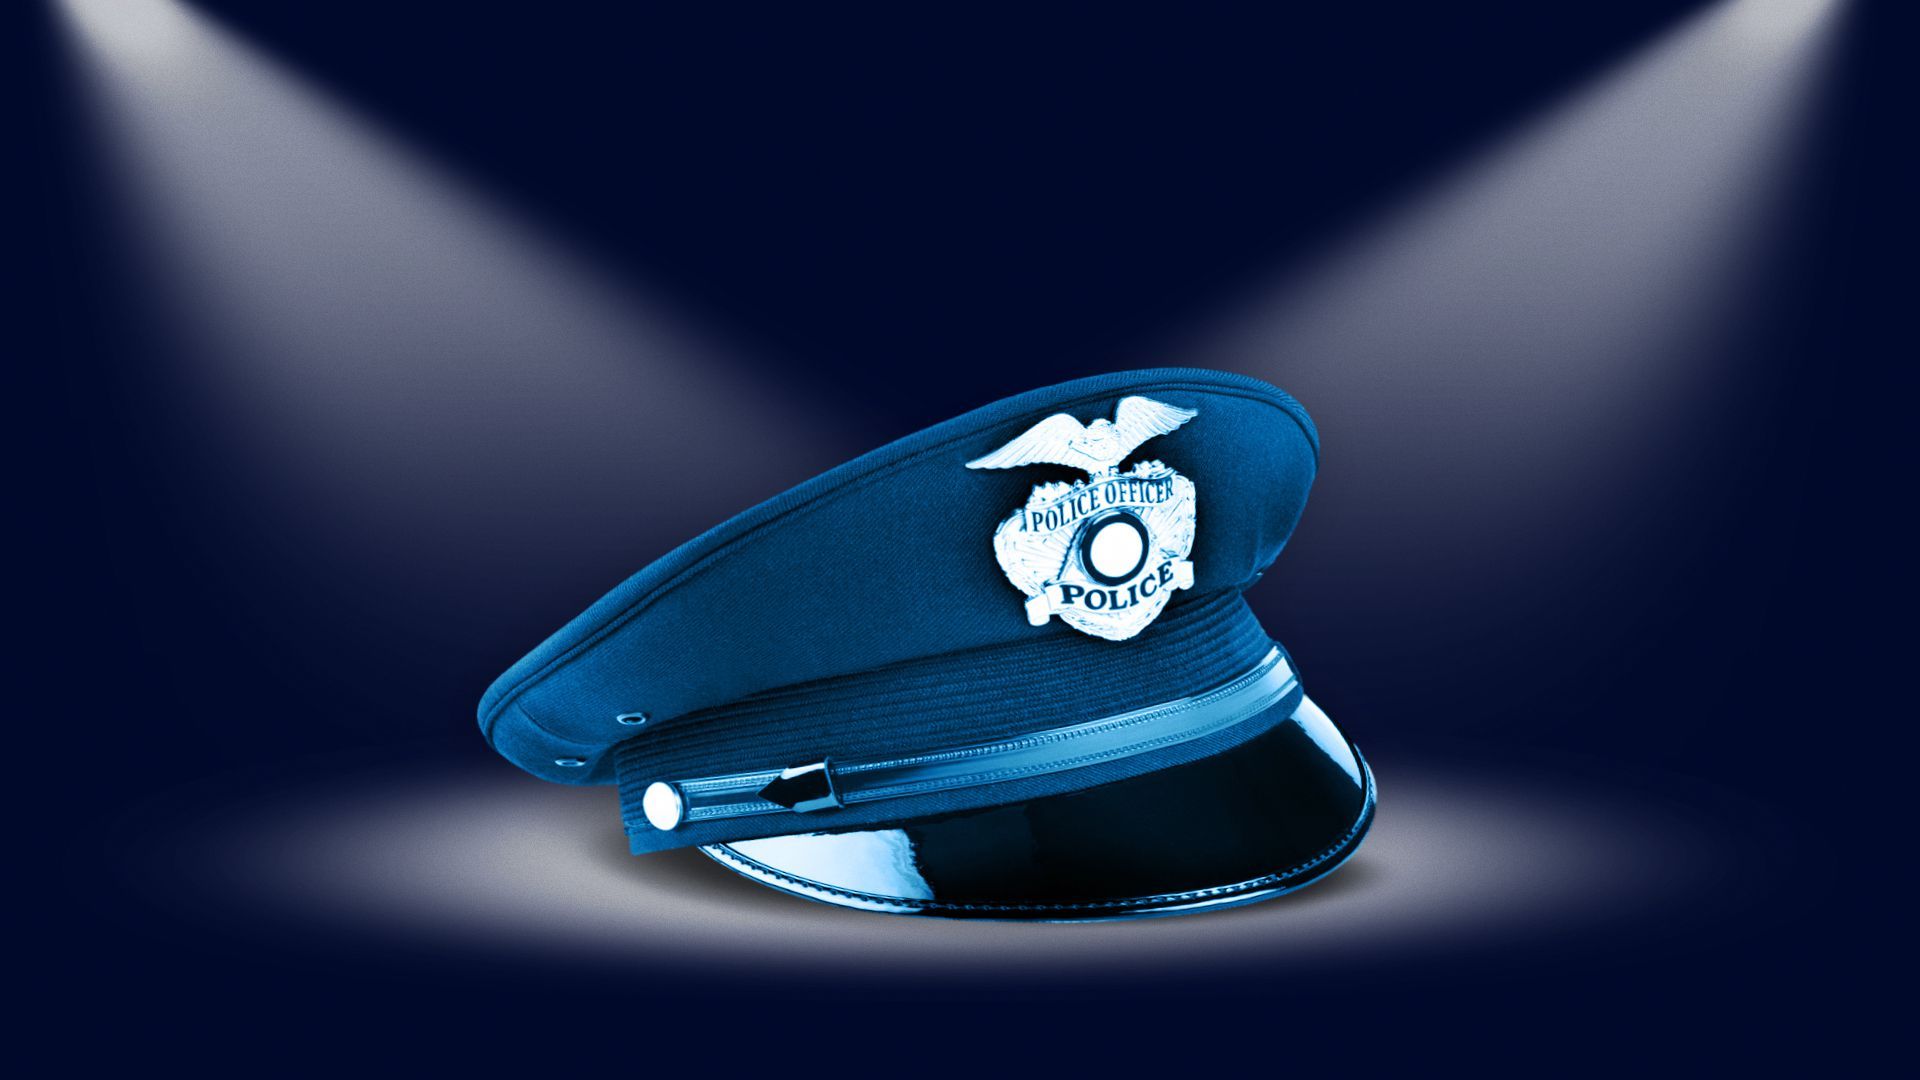 Police cap on dark background under spotlights.